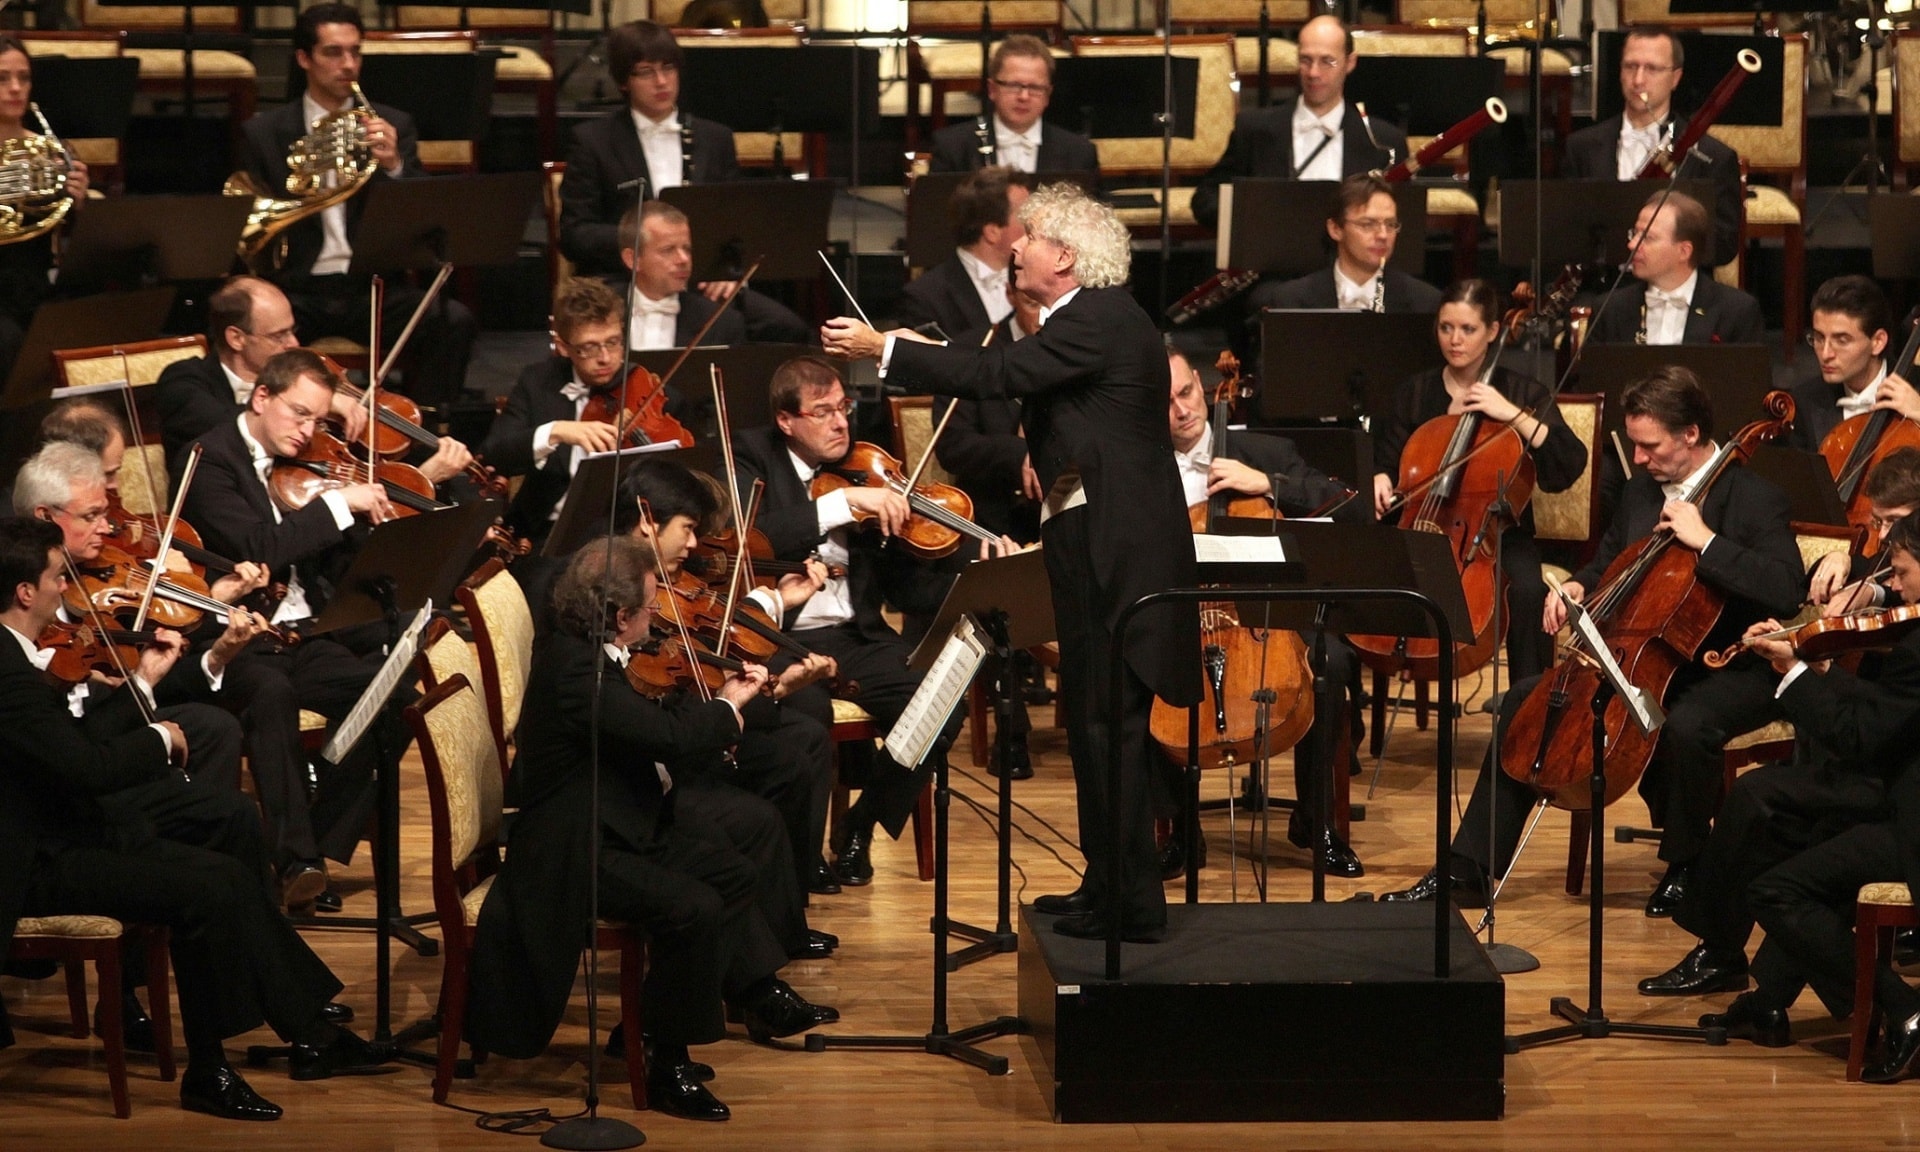 Сэр Саймон Рэттл дирижирует Берлинским филармоническим оркестром на концерте в Абу Даби в ноябре 2010 года. Кто будет руководить самым известным оркестром в мире? 